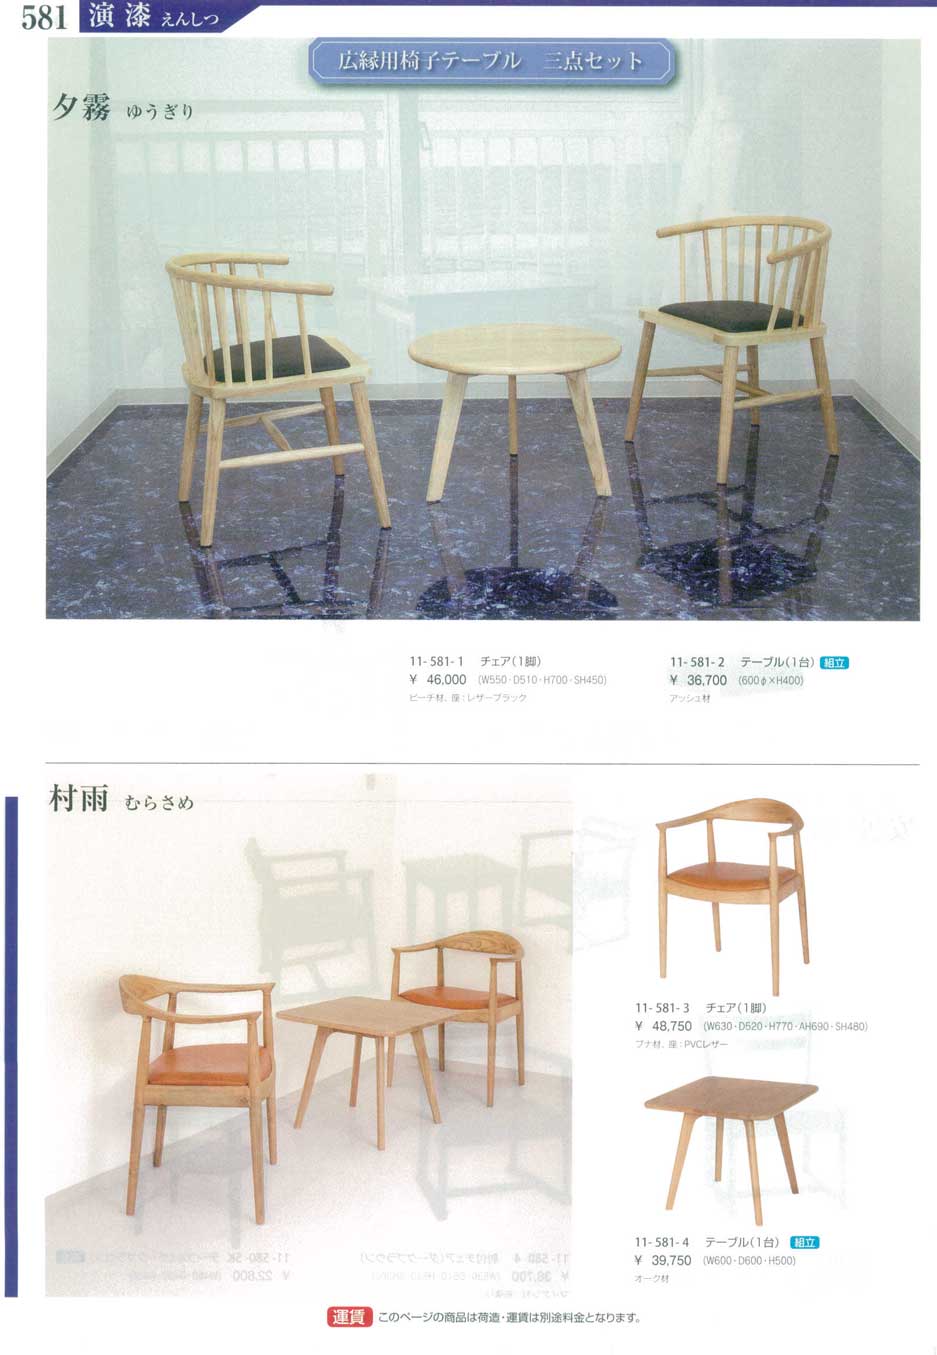 食器 広縁用椅子テーブル・三点セットSet of Table and Chairs 演漆